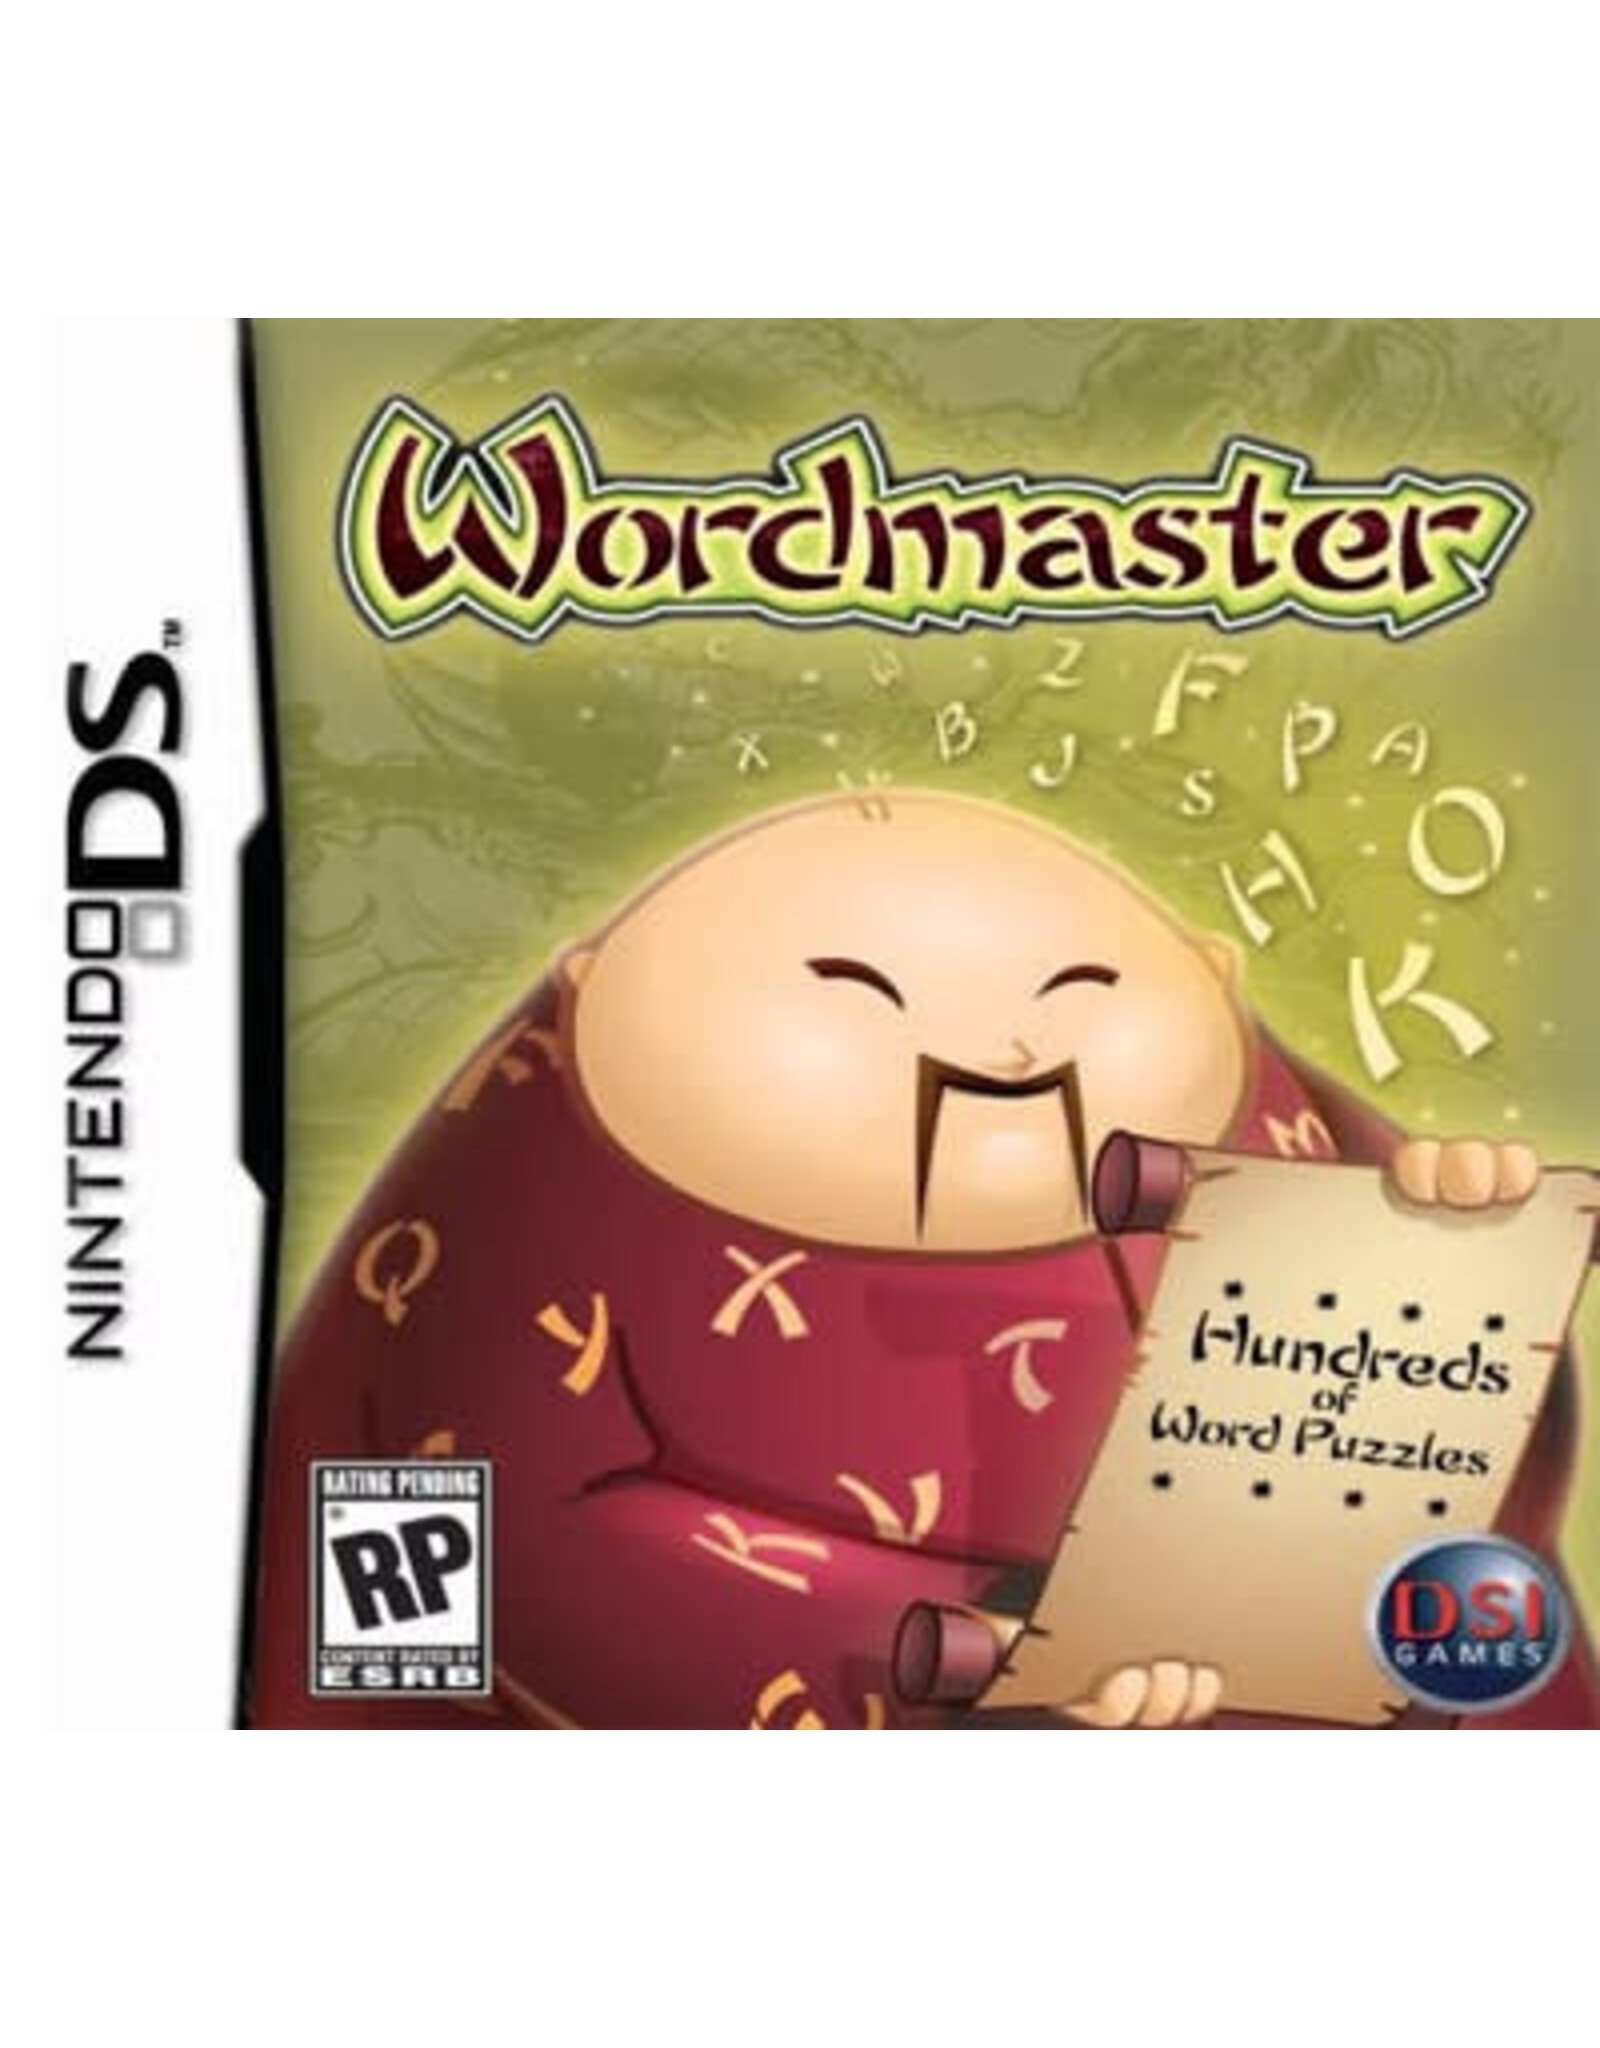 Nintendo DS Wordmaster (CiB)